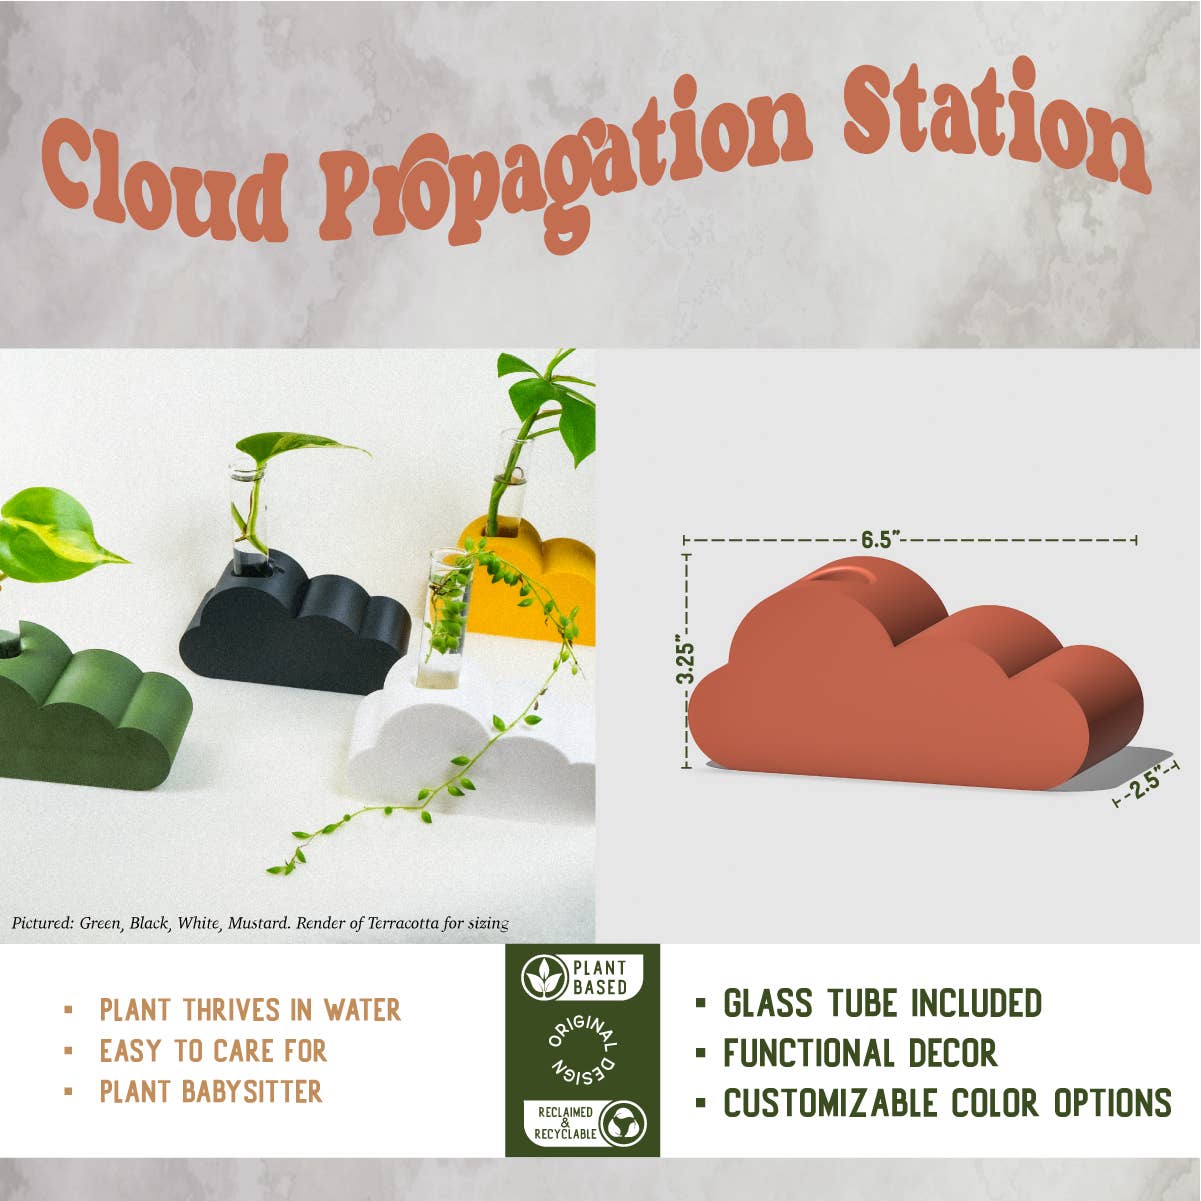 Cloud Propagation Station